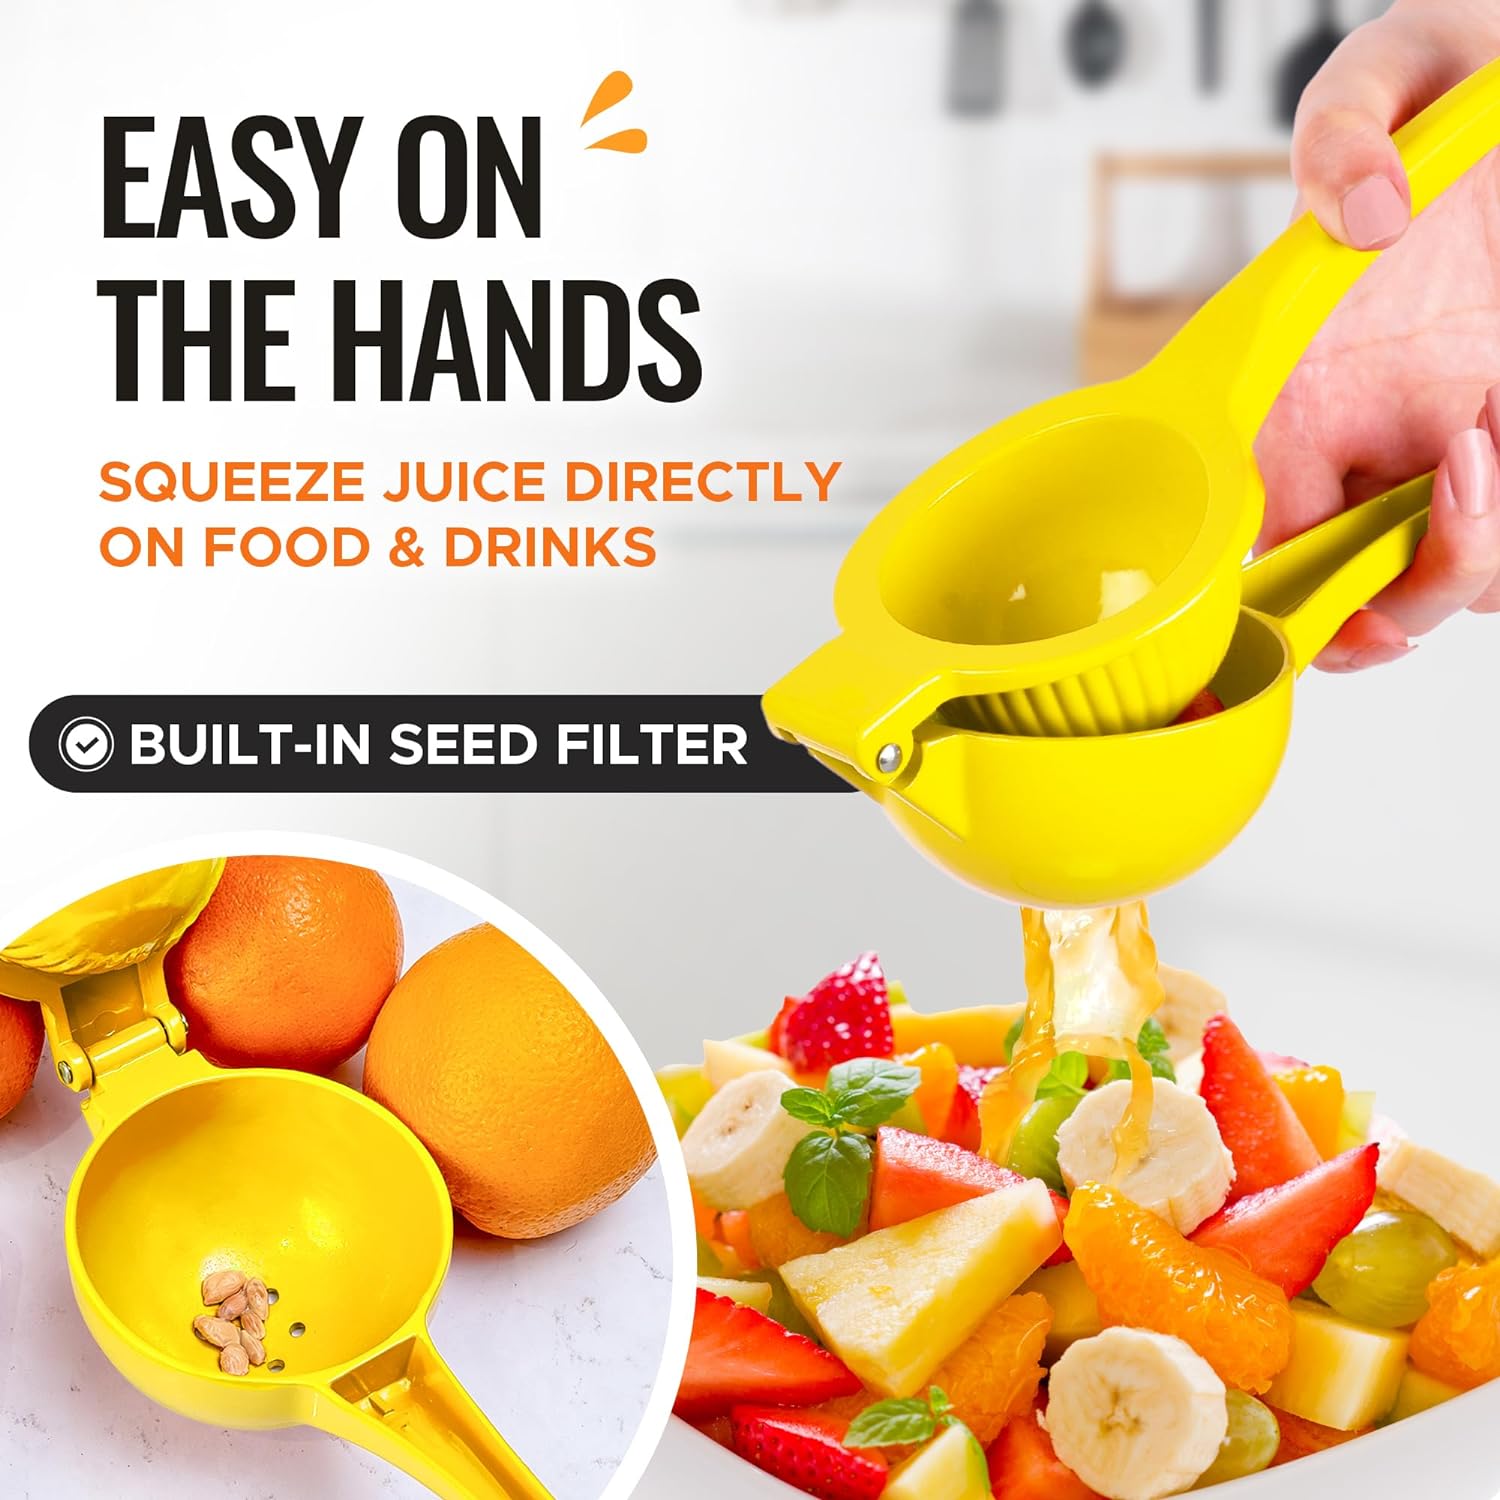 Premium Quality Metal Orange Squeezer Citrus Juicer